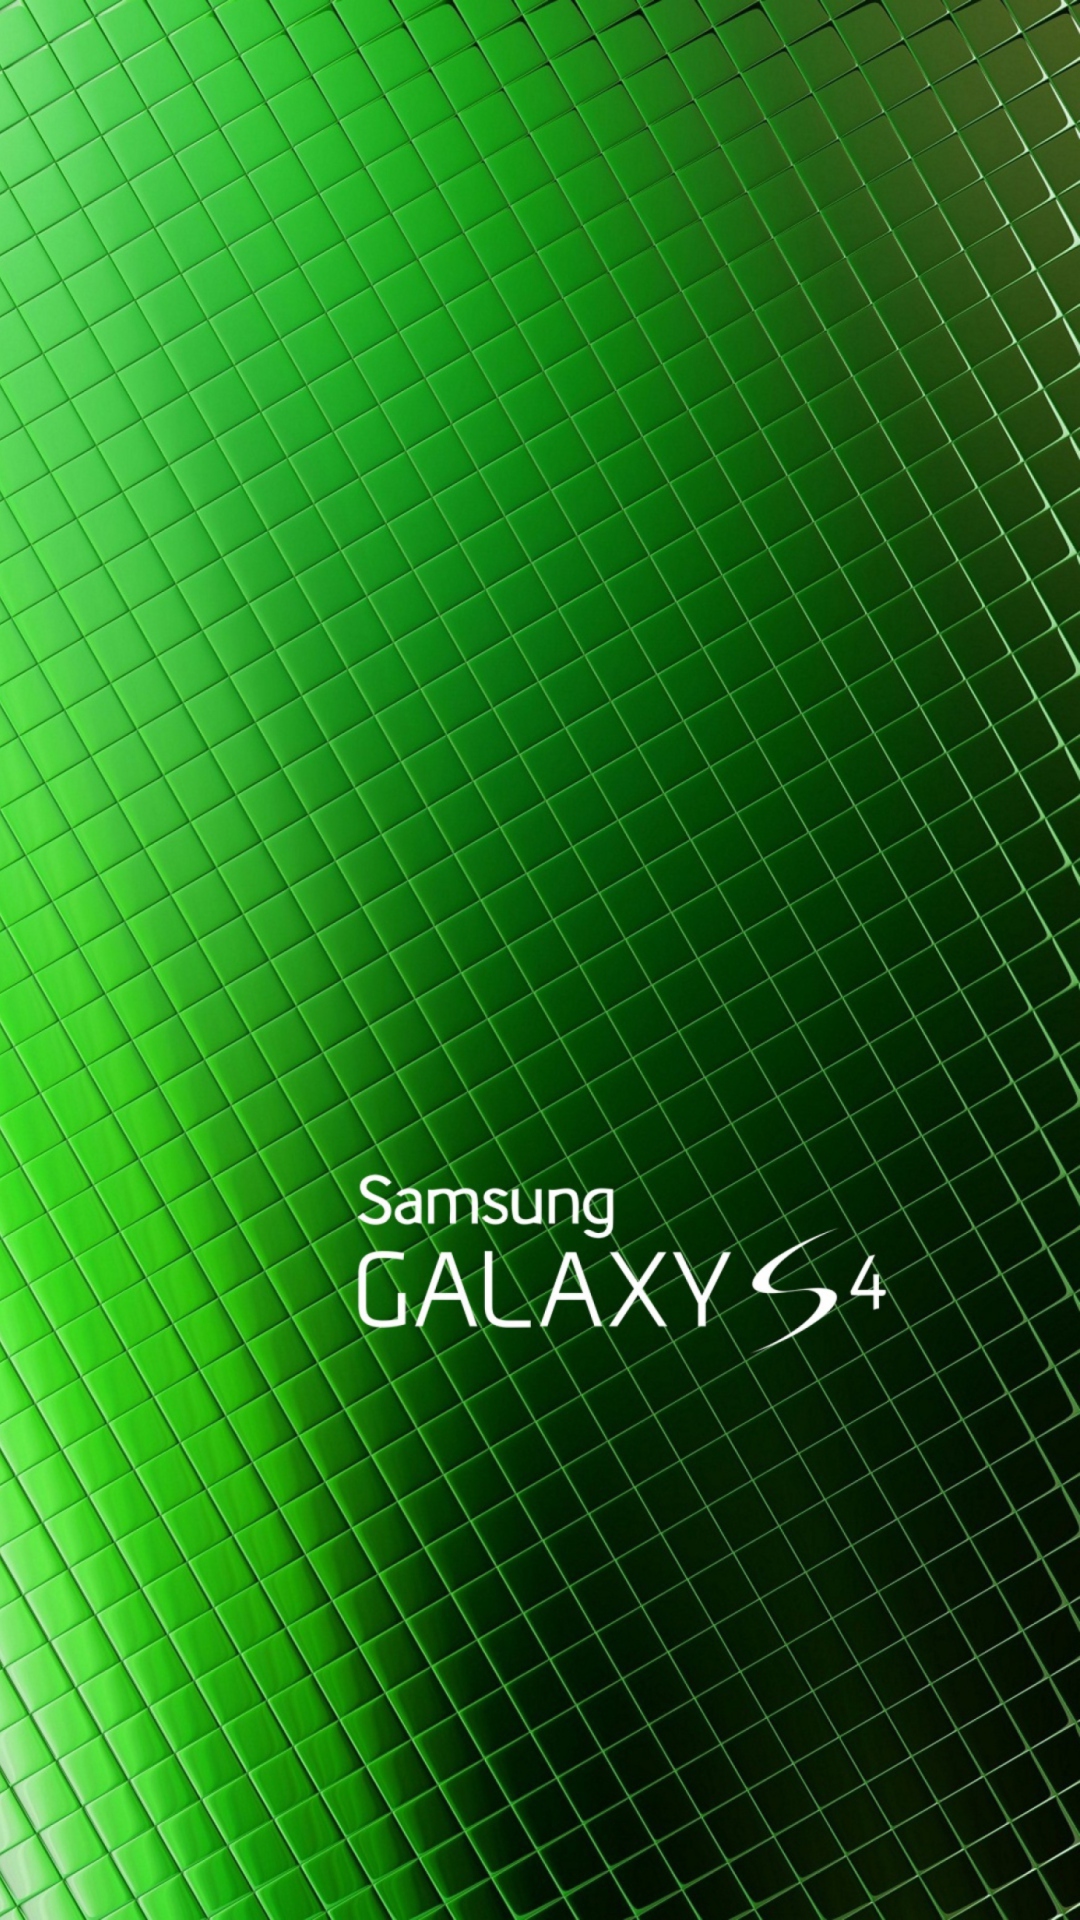 Galaxy S4 wallpaper 1080x1920